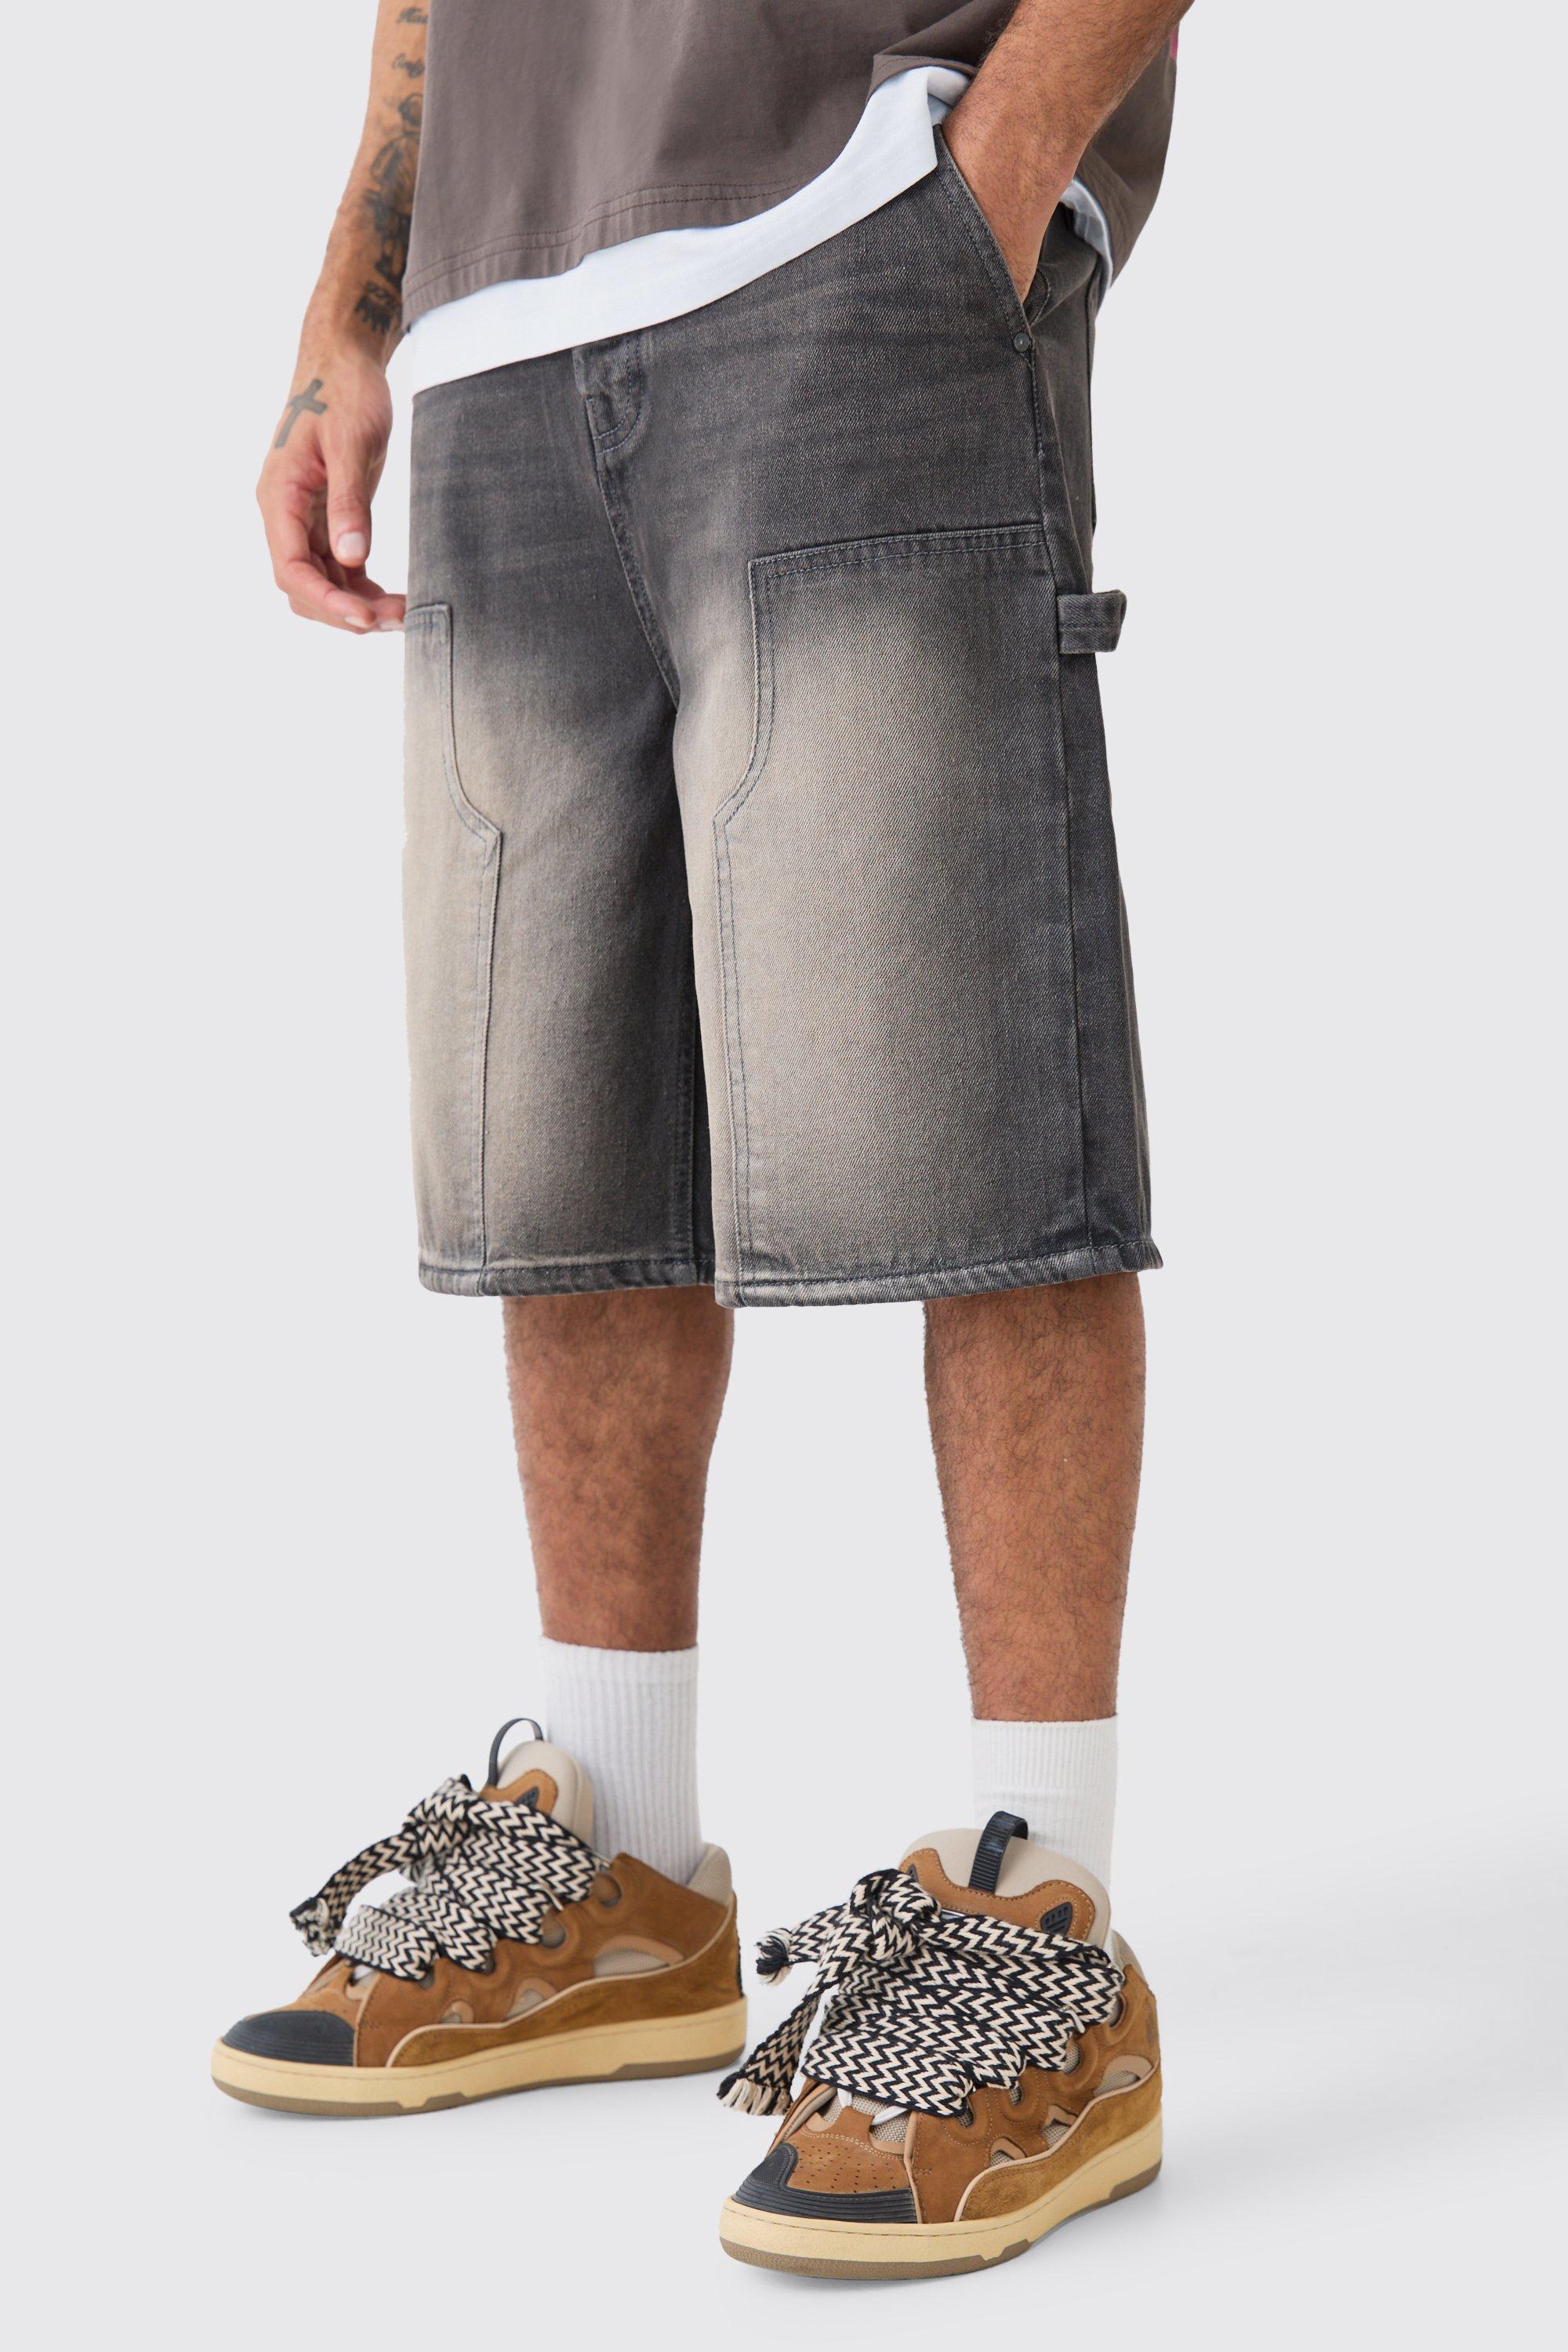 Image of Pantaloni tuta in denim grigio antico con dettagli stile Carpenter, Grigio